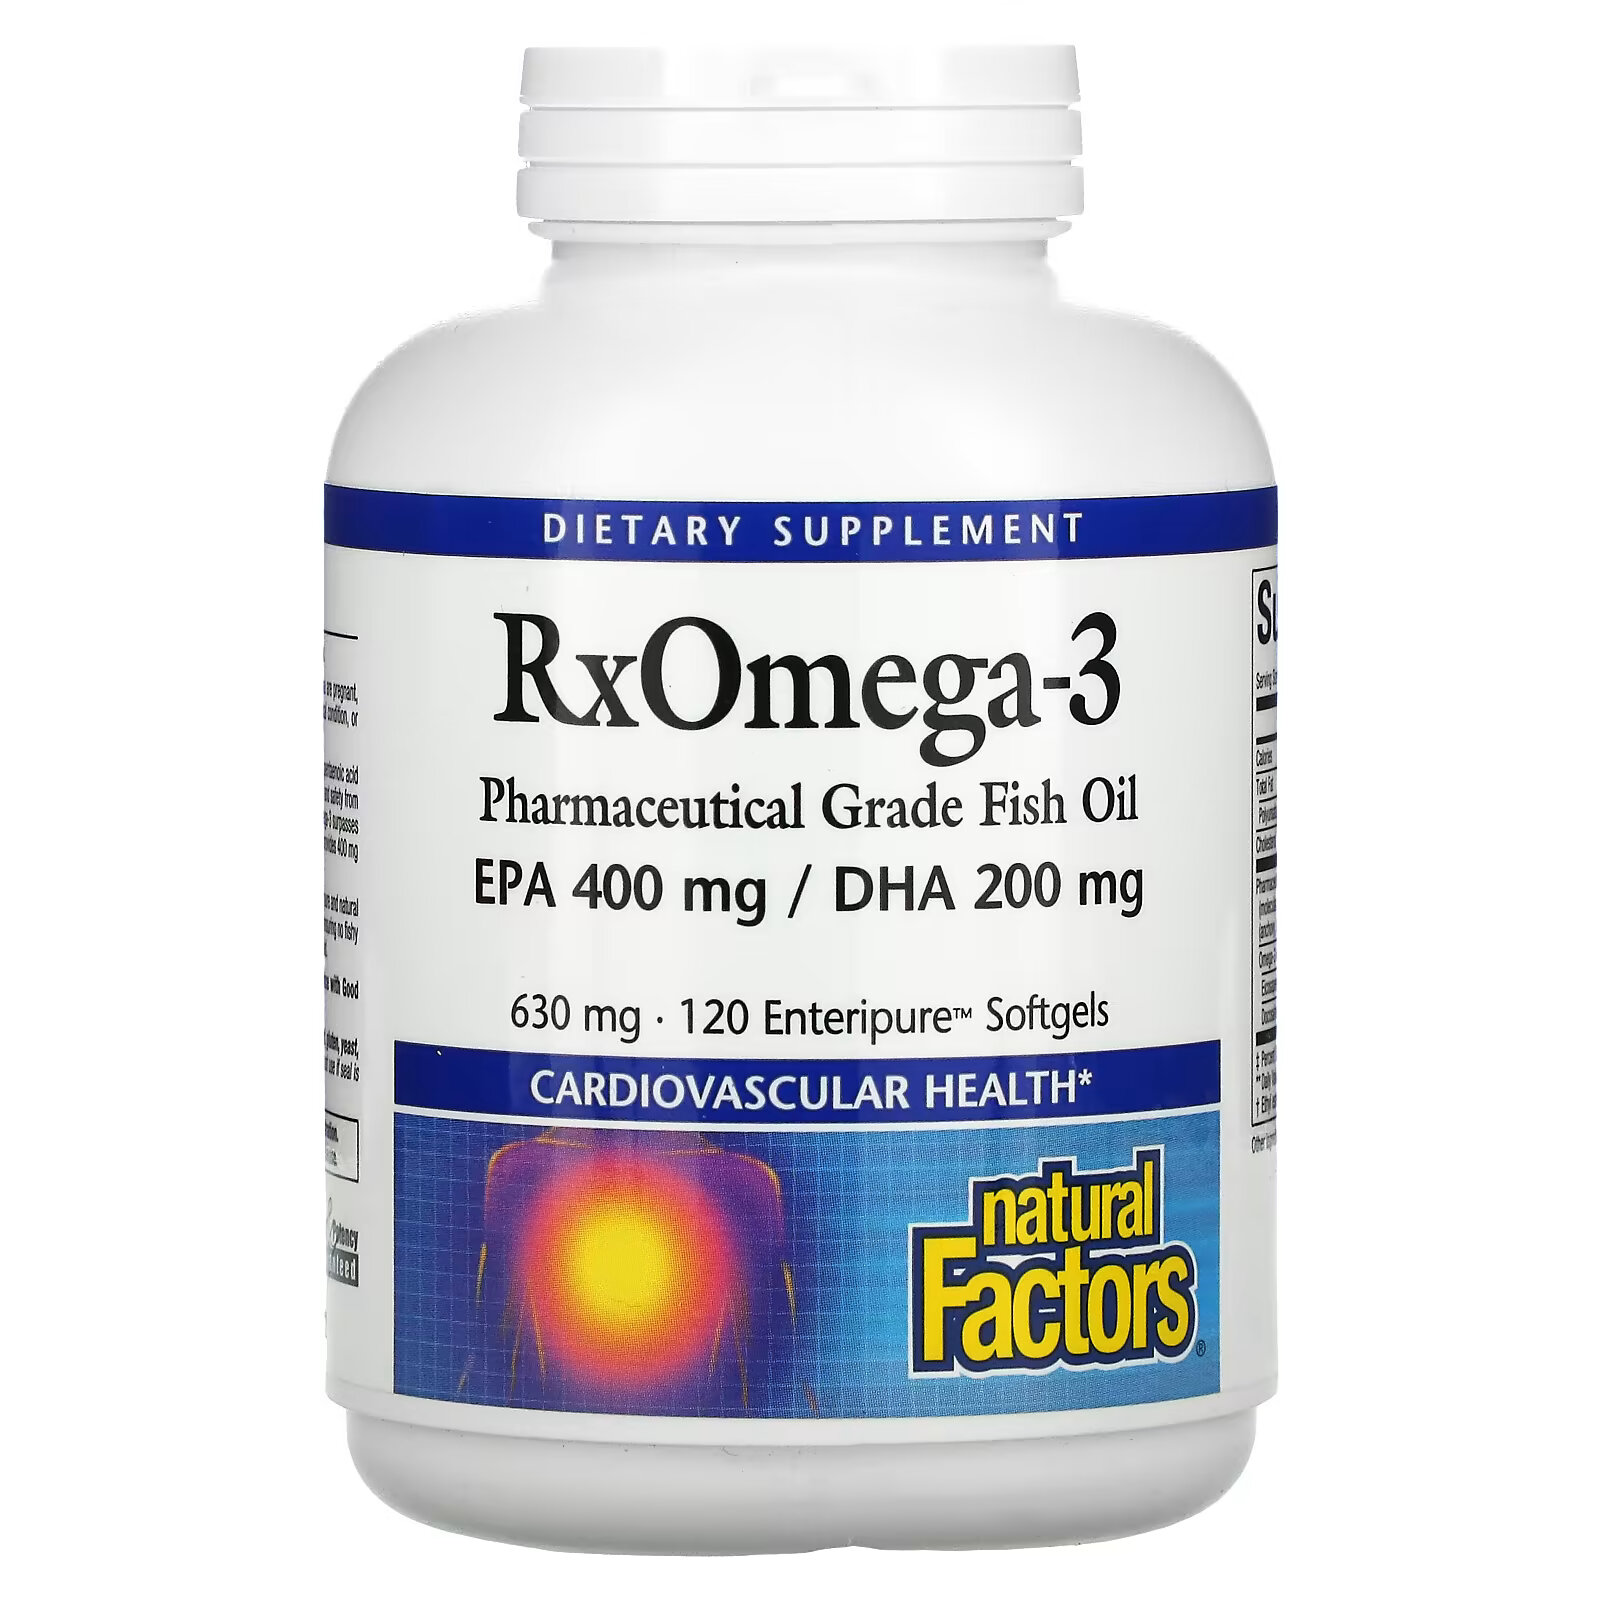 Natural Factors, Rx Omega-3, 120 мягких таблеток Enteripure natural factors rx omega 3 1260 мг 120 мягких таблеток 630 мг на мягкую таблетку